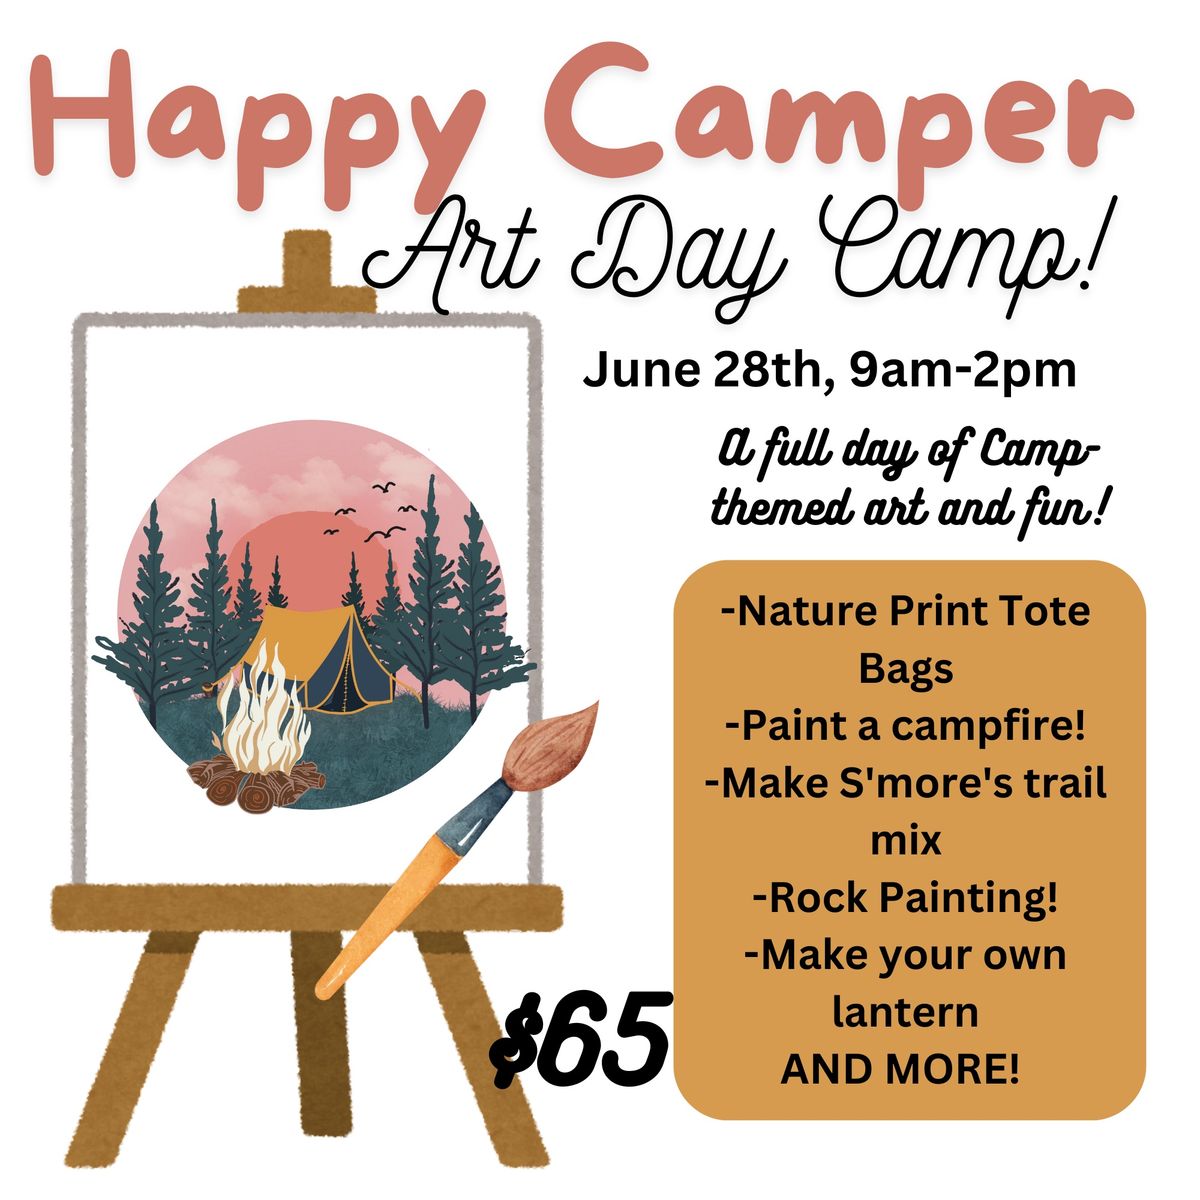 Happy Camper Art Day Camp!